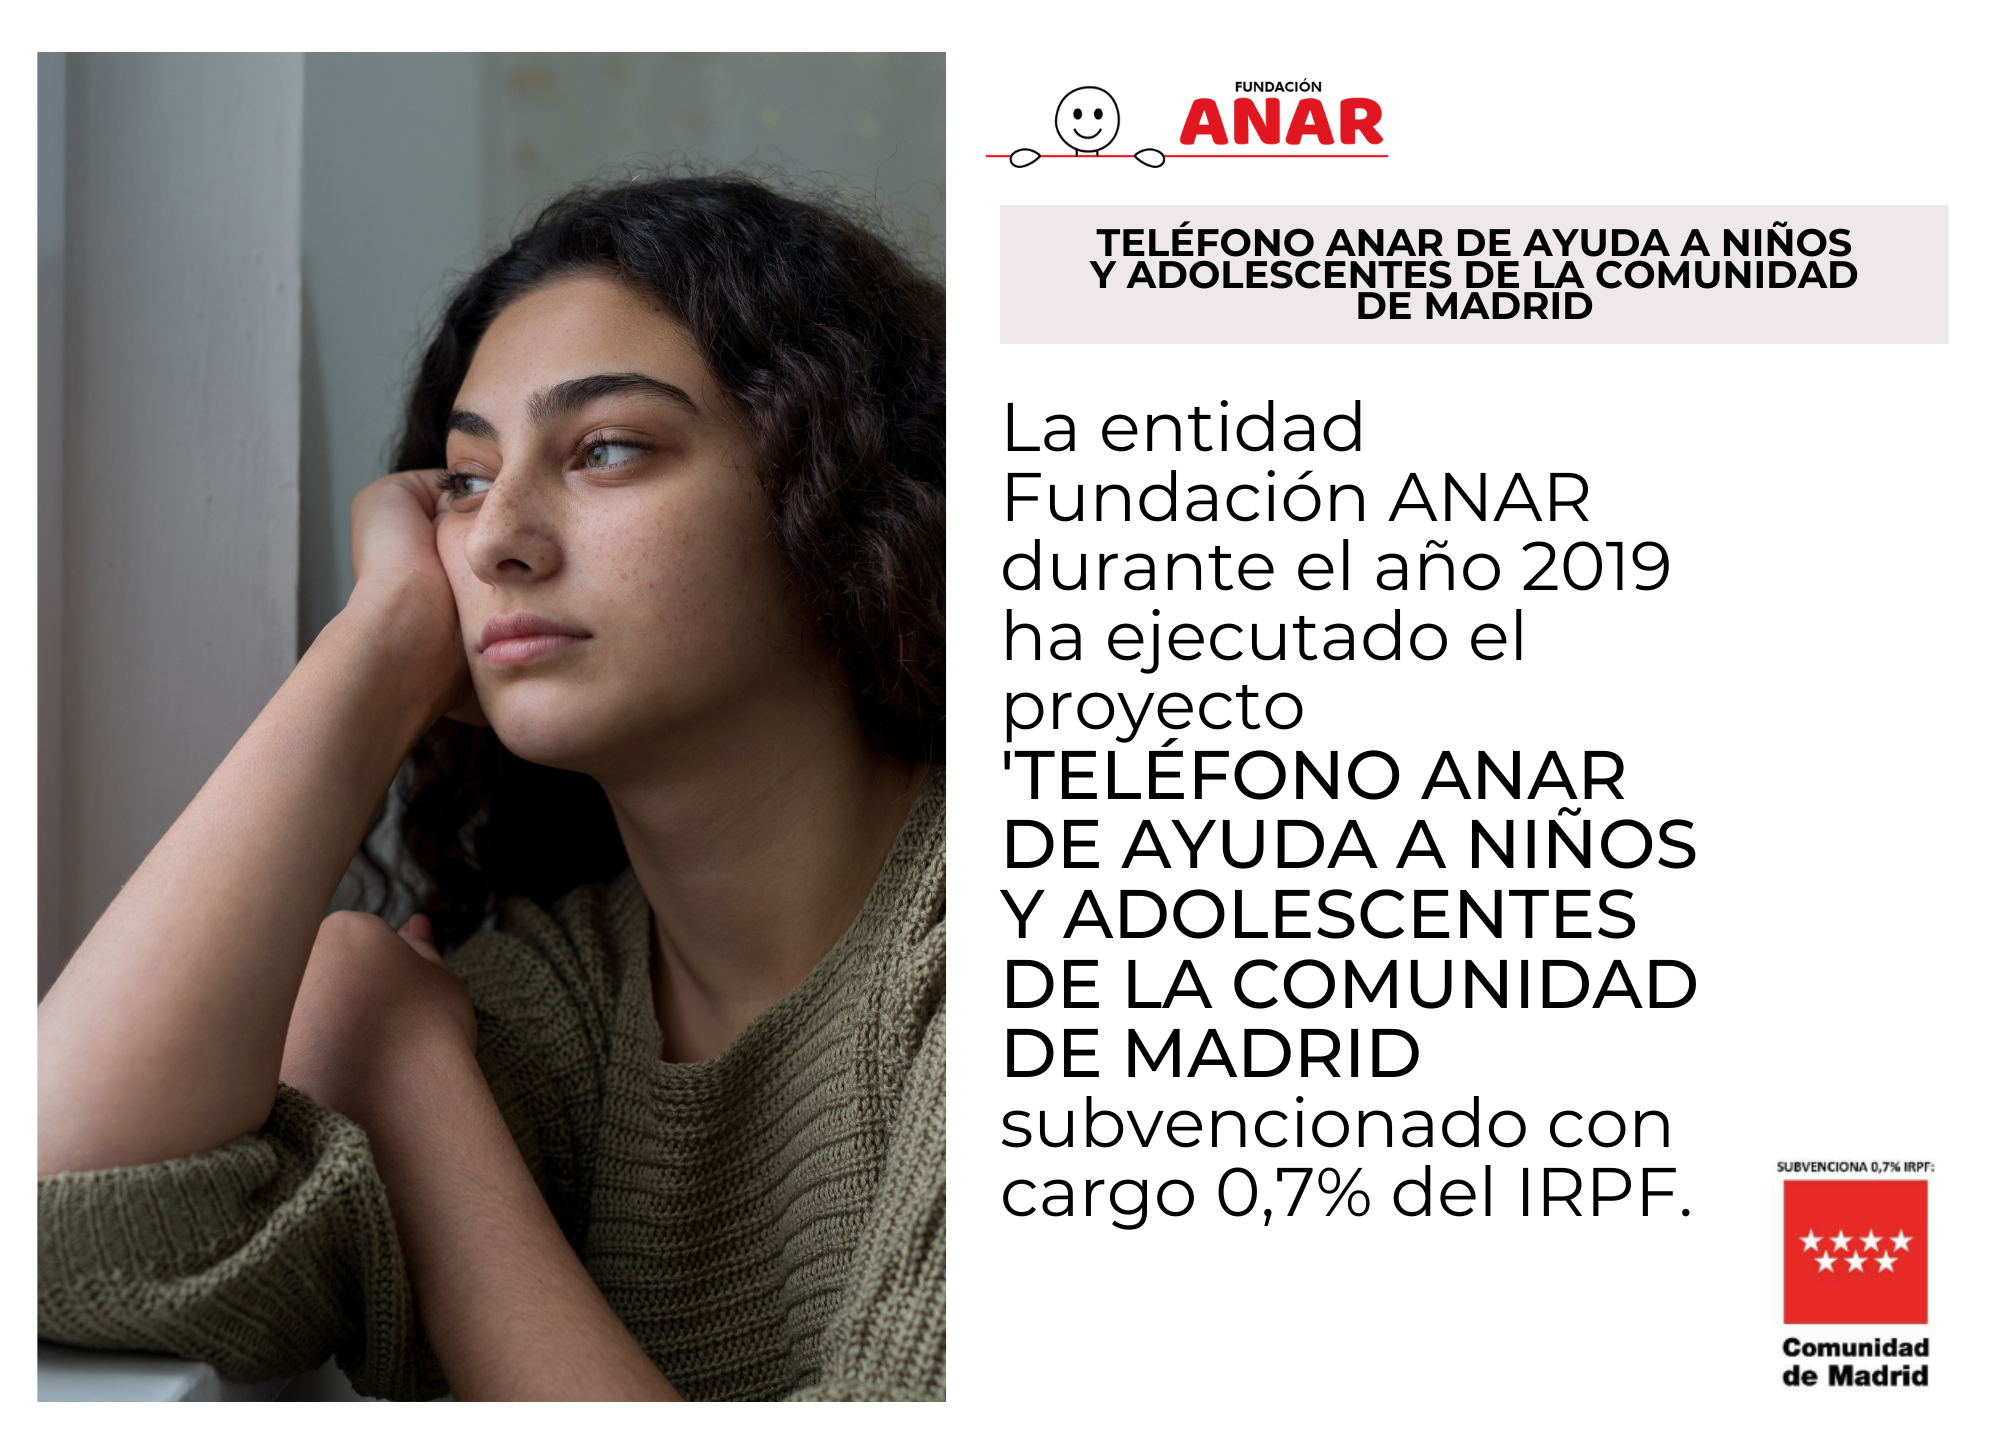 El Teléfono ANAR, subvencionado por la Comunidad de Madrid